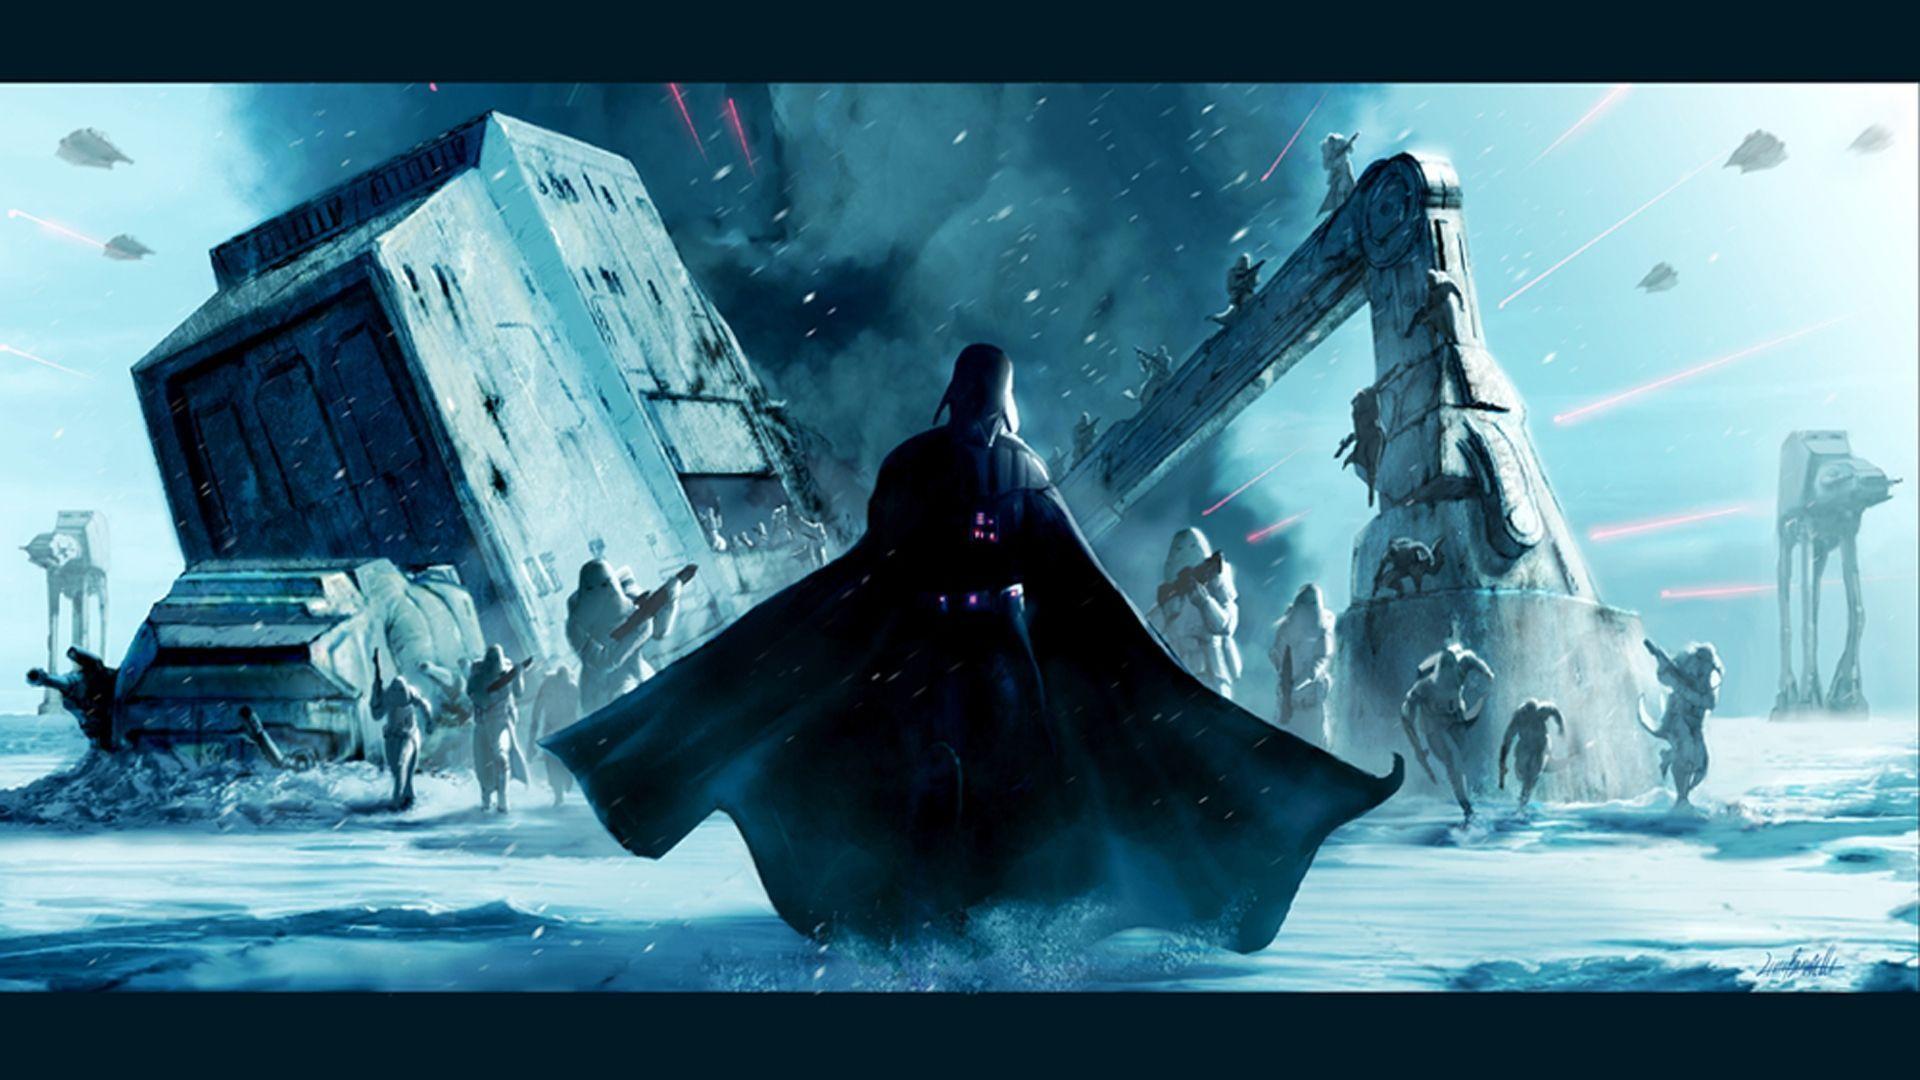 Star Wars Wallpaper Darth Vader. Free HD Desktop Wallpaper